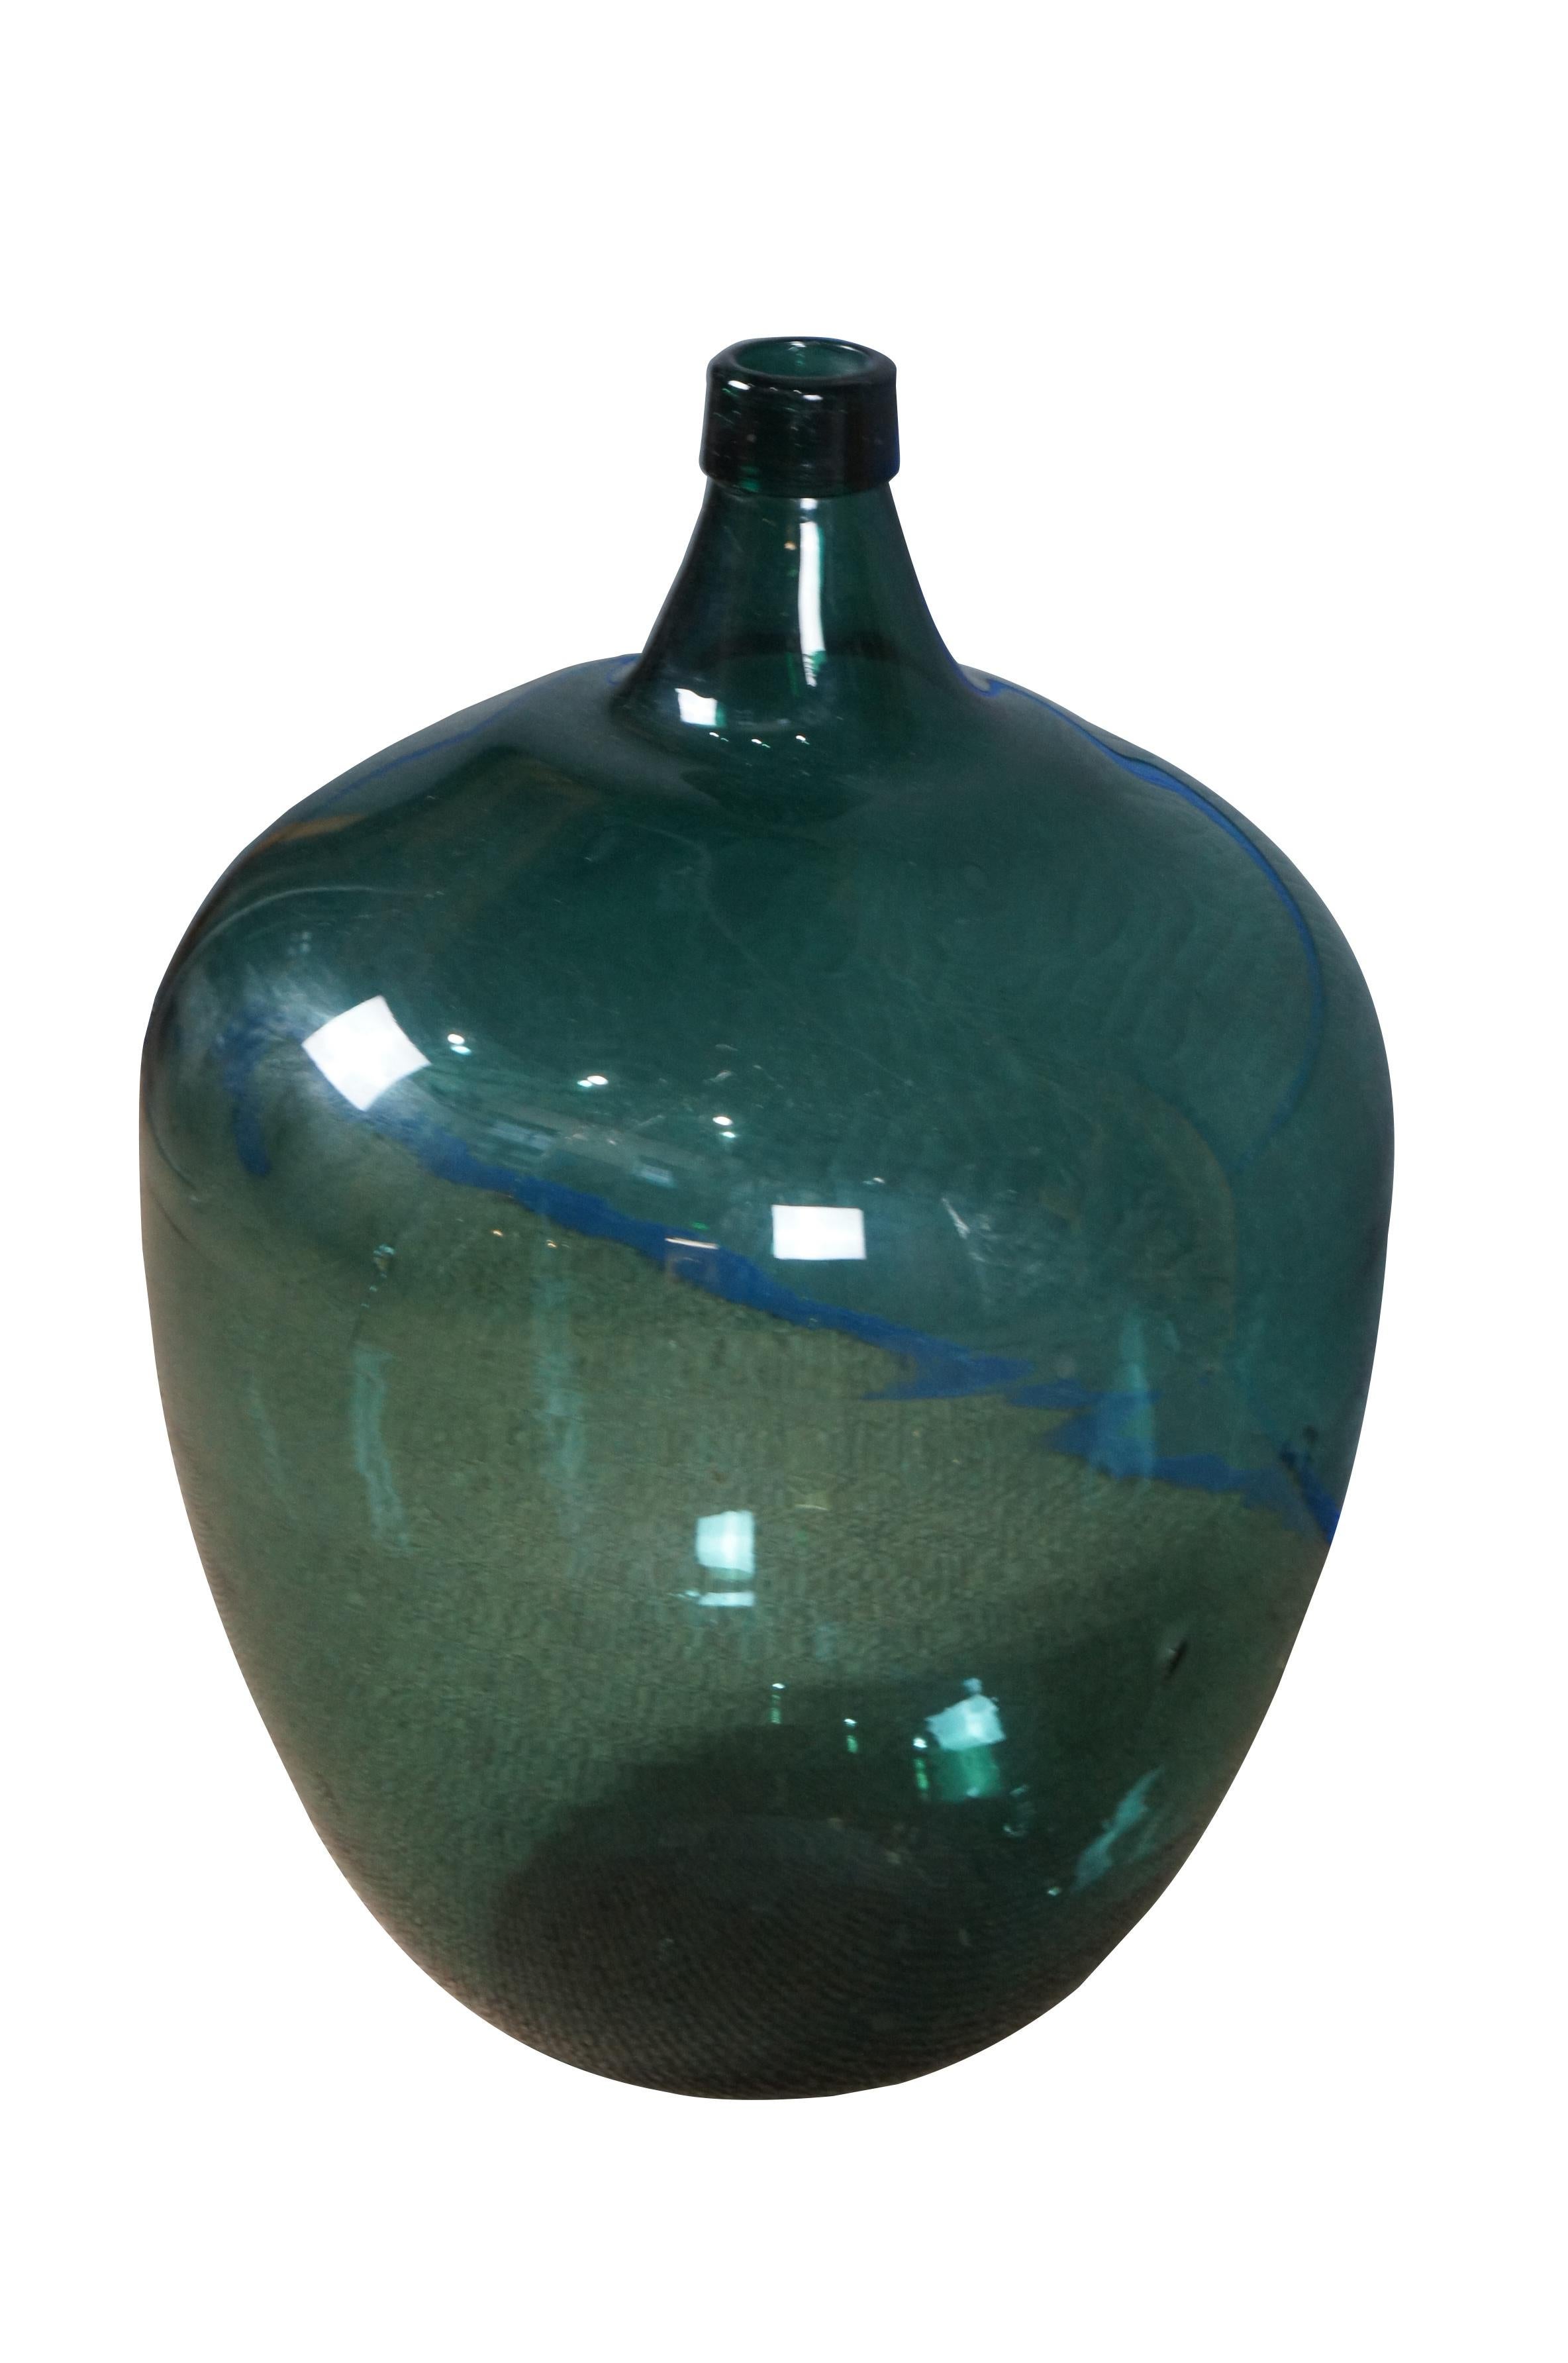 Sehr große antike mundgeblasene grüne Glasflasche / Bonbonne Weinflasche oder Krug.

Abmessungen:
18